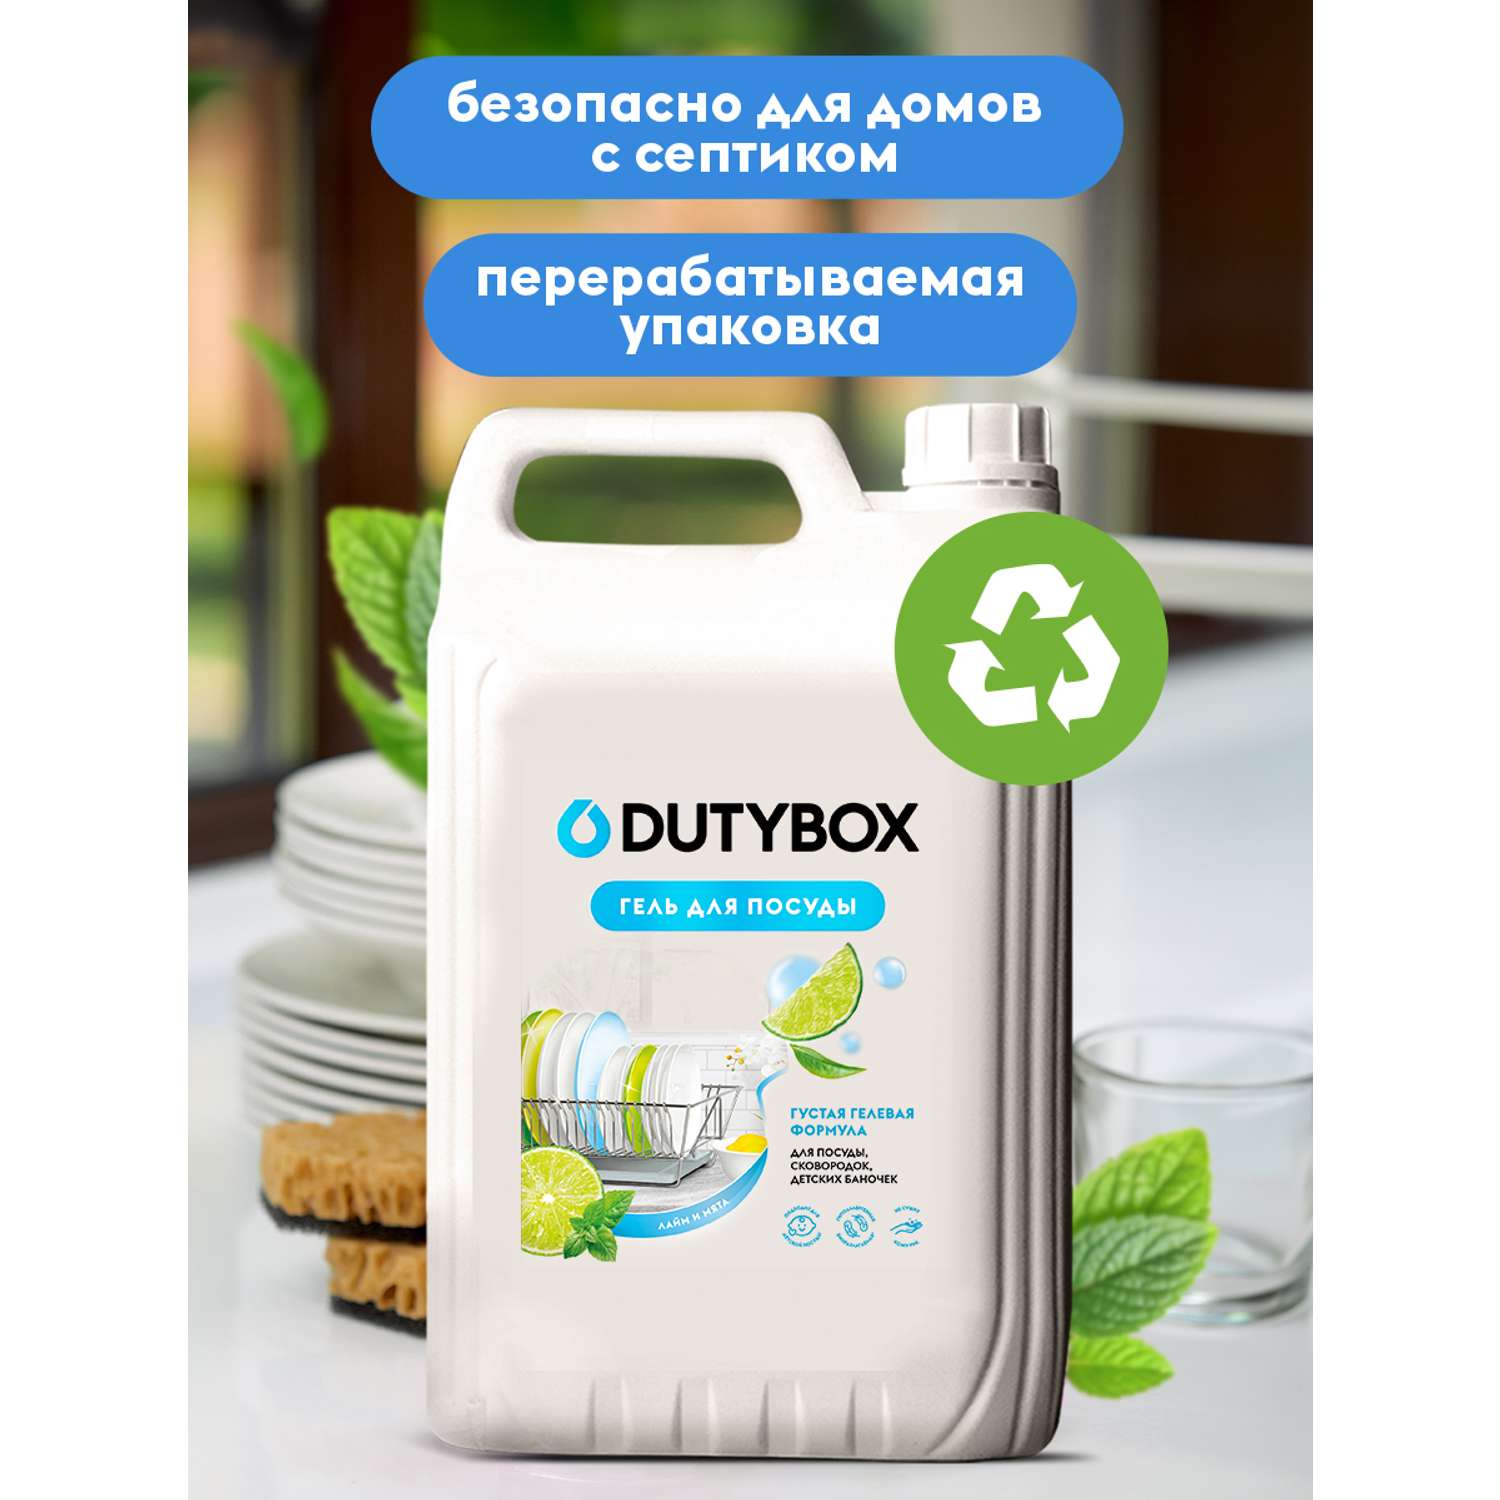 Гель для мытья посуды DUTYBOX 5 л гипоаллергенный 0+ - фото 4